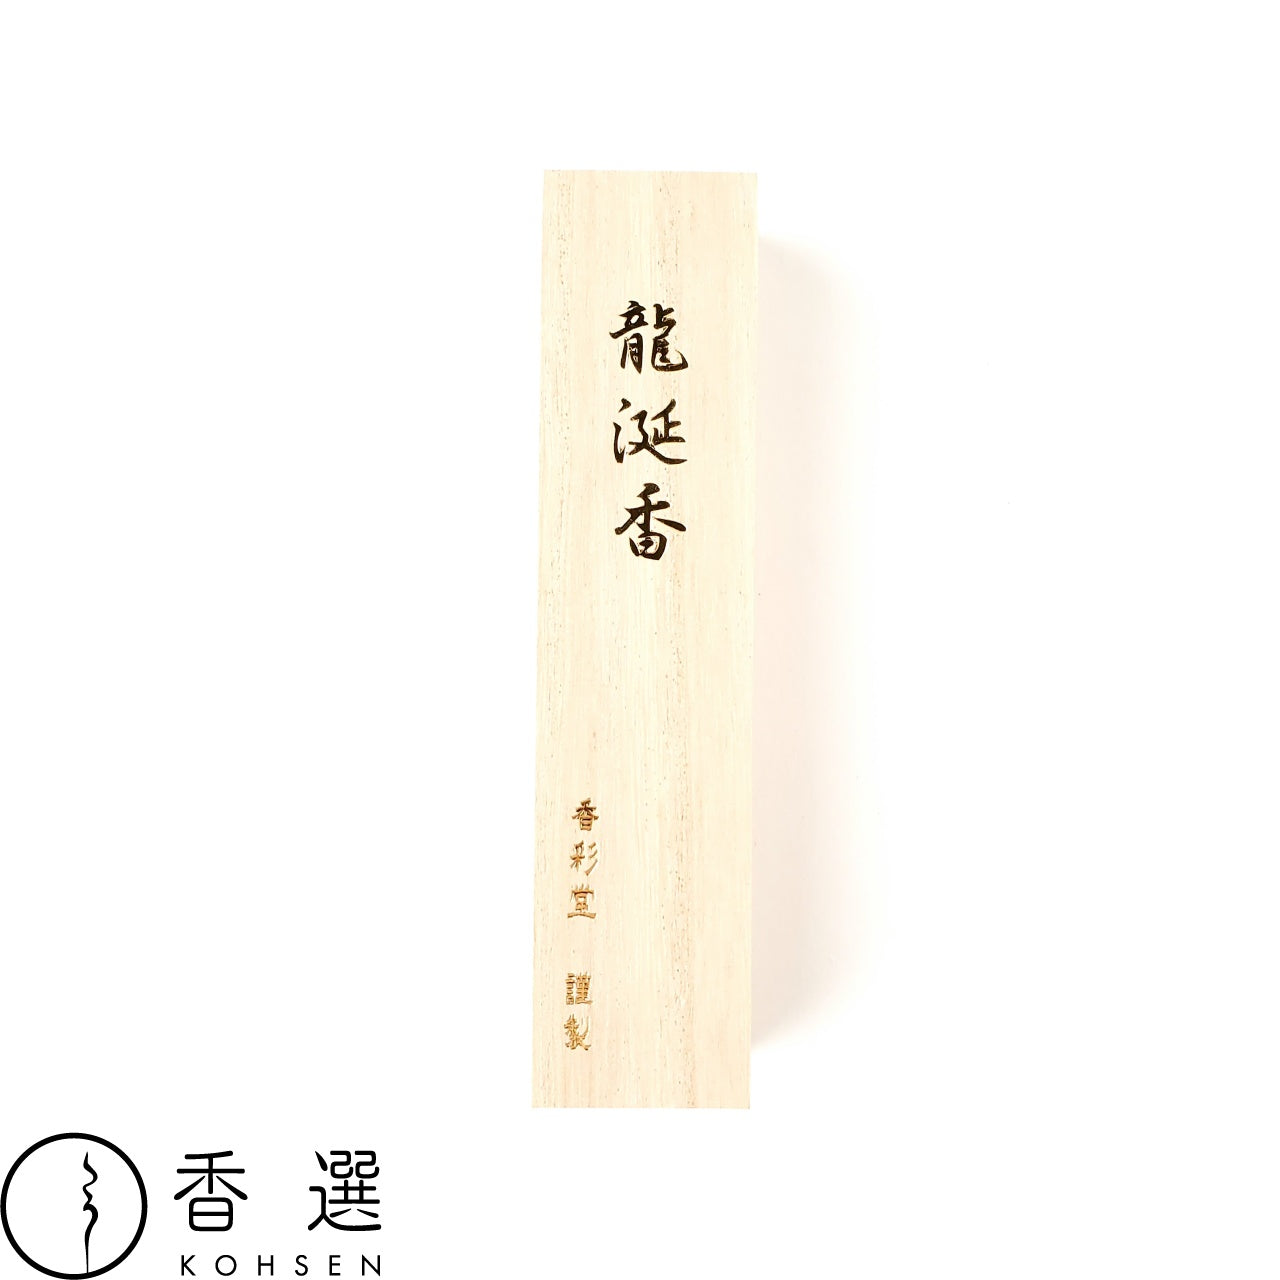 香彩堂のお線香 龍涎香 桐箱ロング インセンス 京都 スティック型 日本製 アロマ